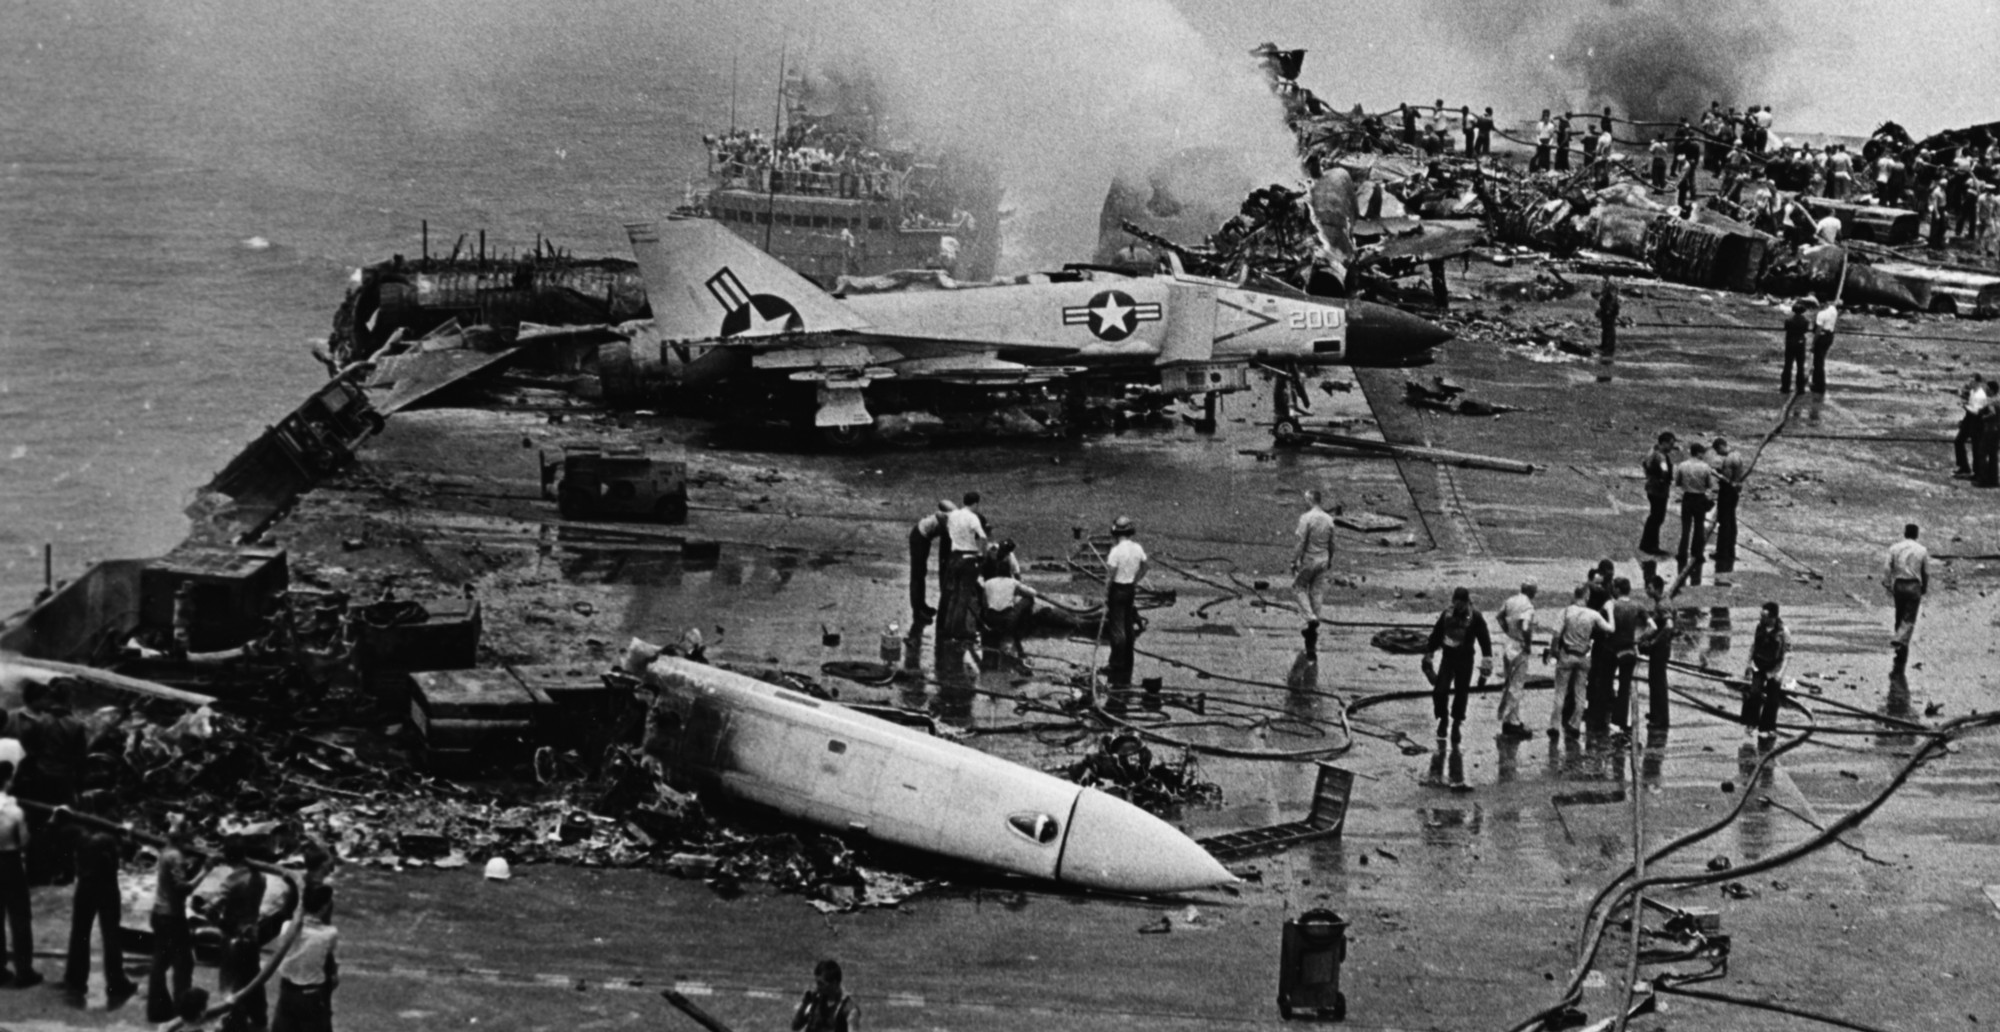 cv-59 uss forrestal aircraft carrier us navy zuni rocket accident fire damage 1967 52